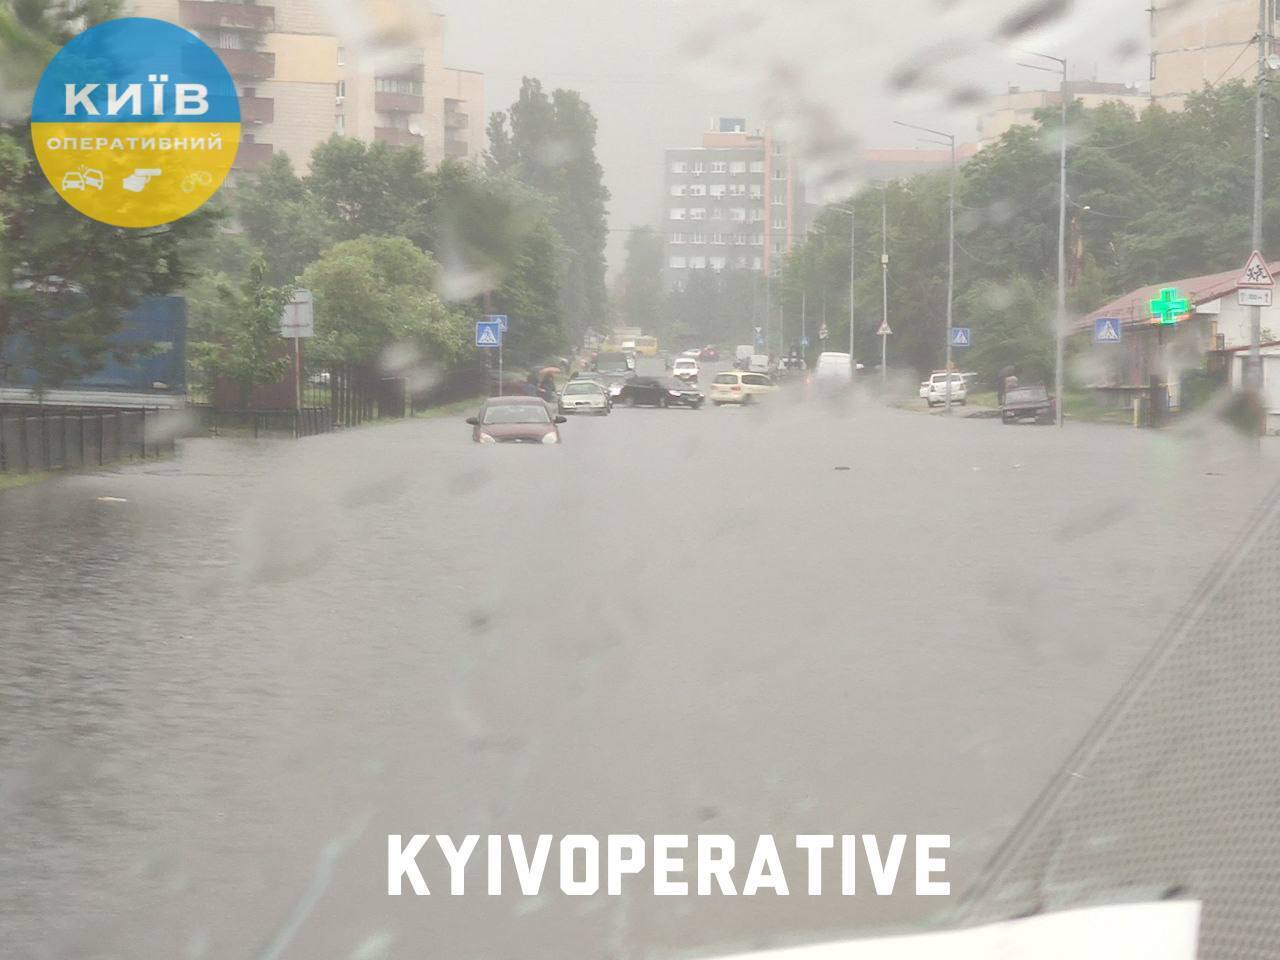 Дороги превратились в озера: Киев накрыл мощный ливень, коммунальщики работают в усиленном режиме. Подробности, фото и видео